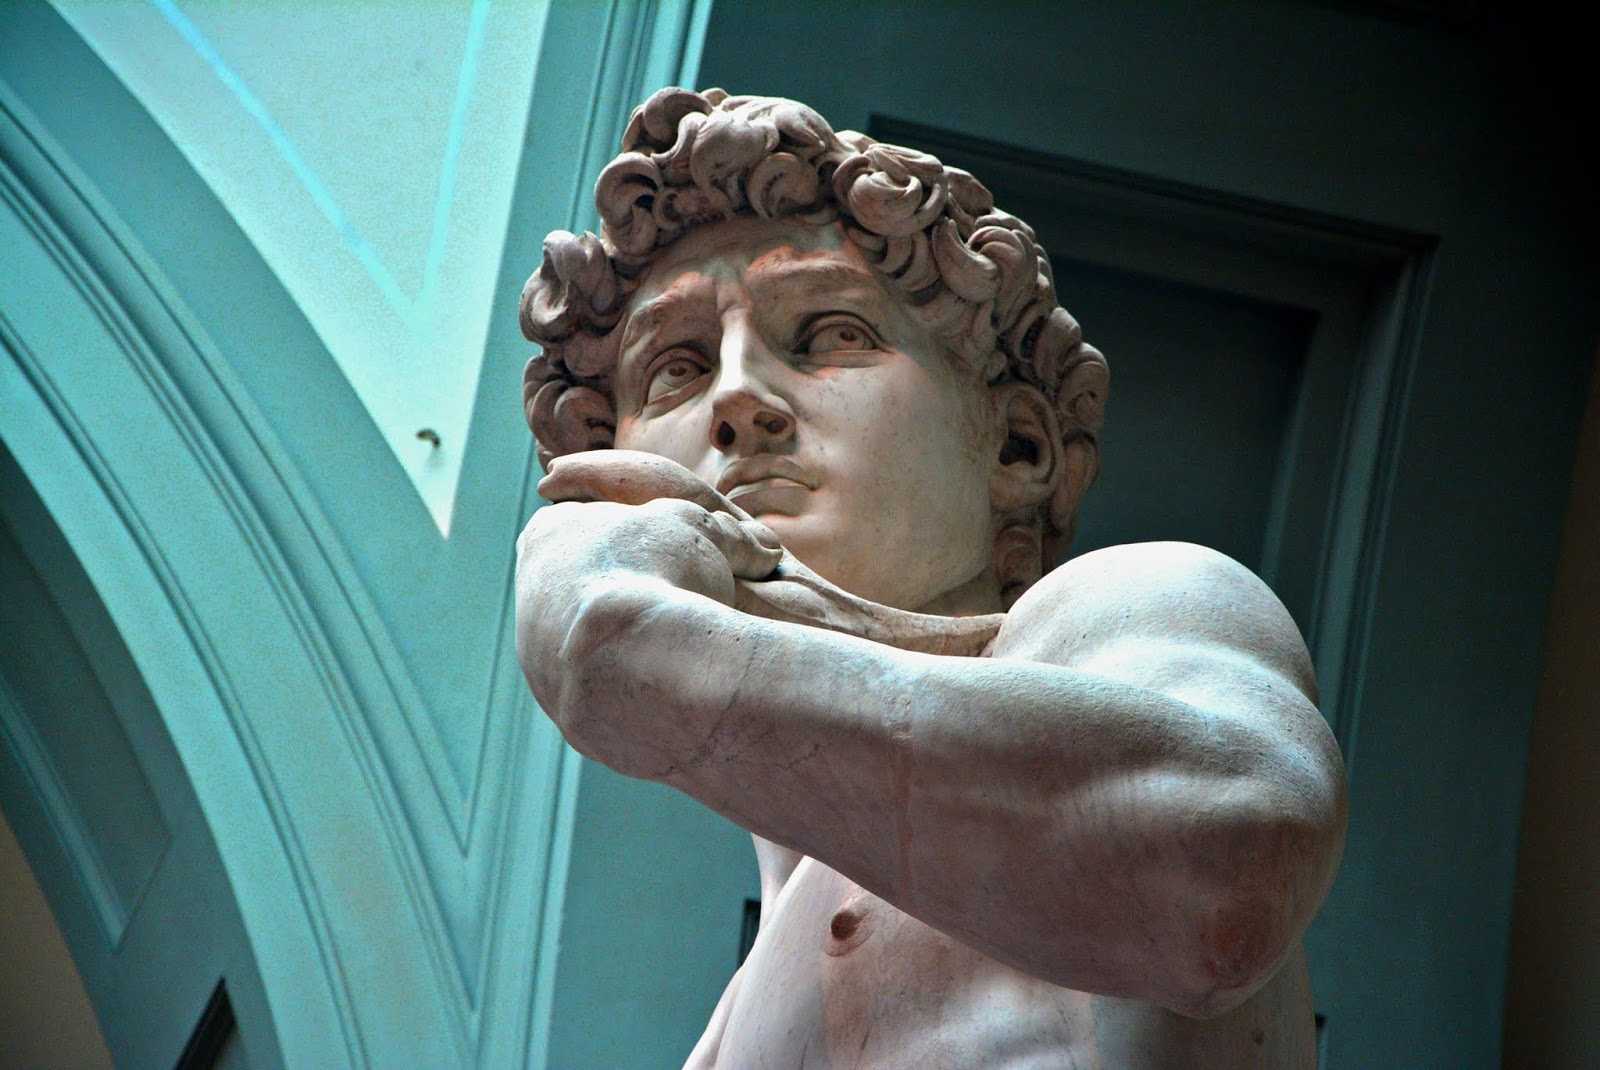 Самые известные скульптуры микеланджело буонарроти